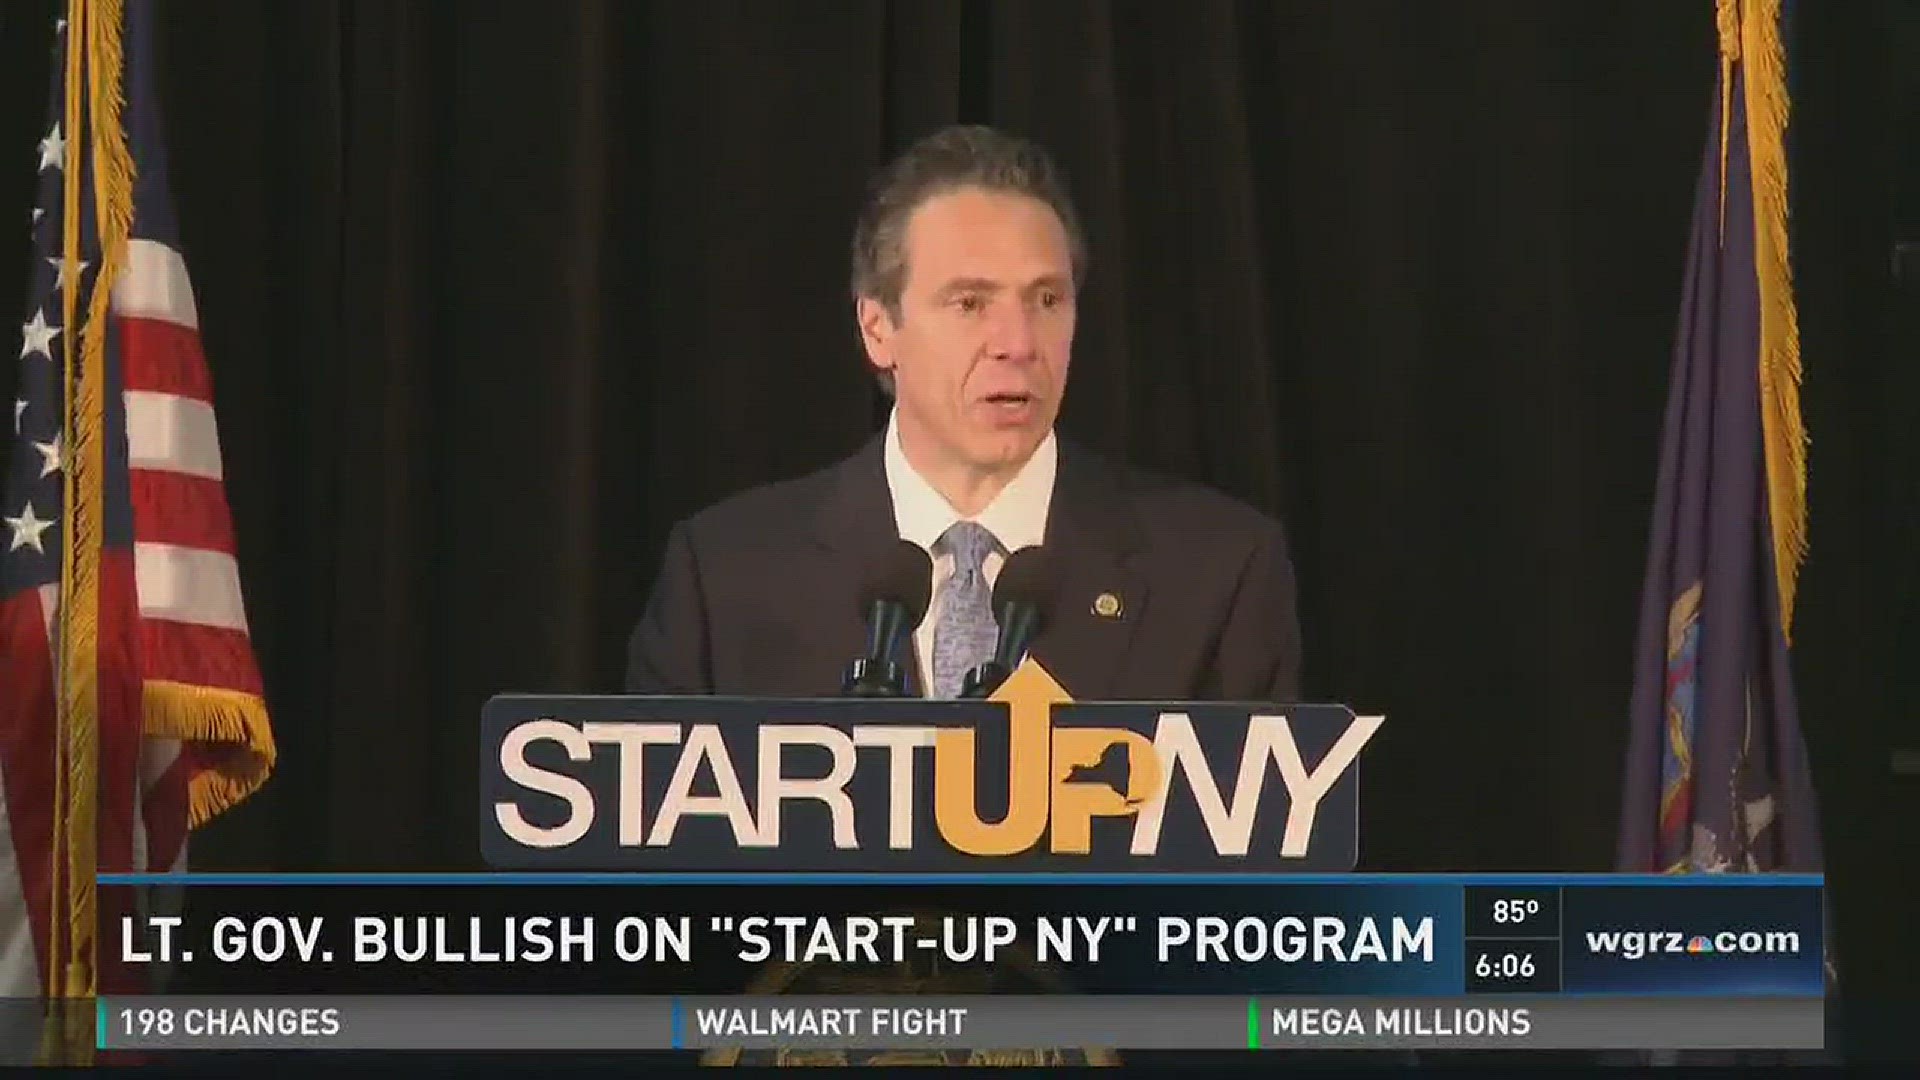 Lt. Gov. Bullish On "Start Up NY" Program